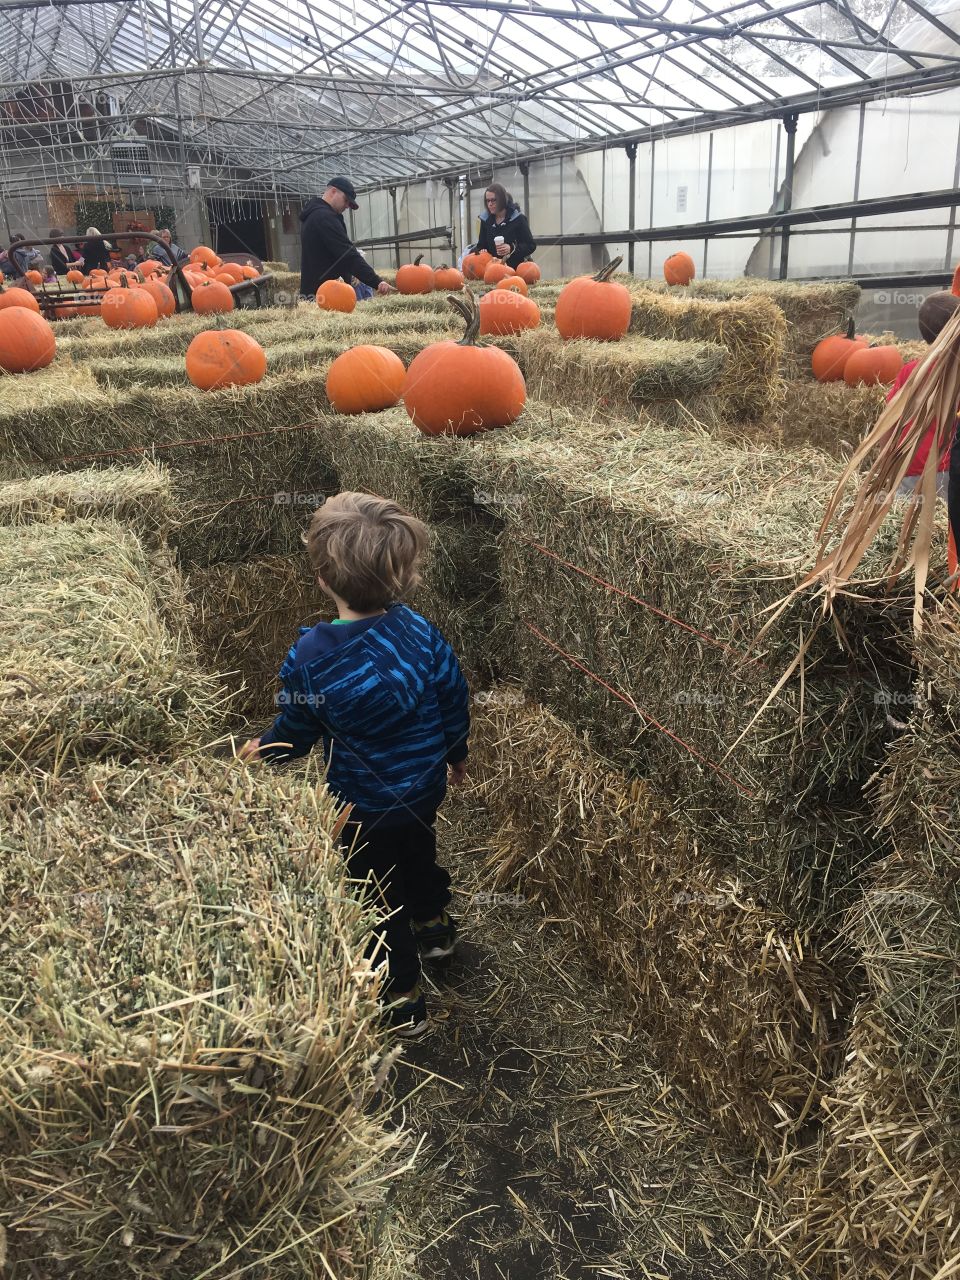 Running through a pumpkin maze